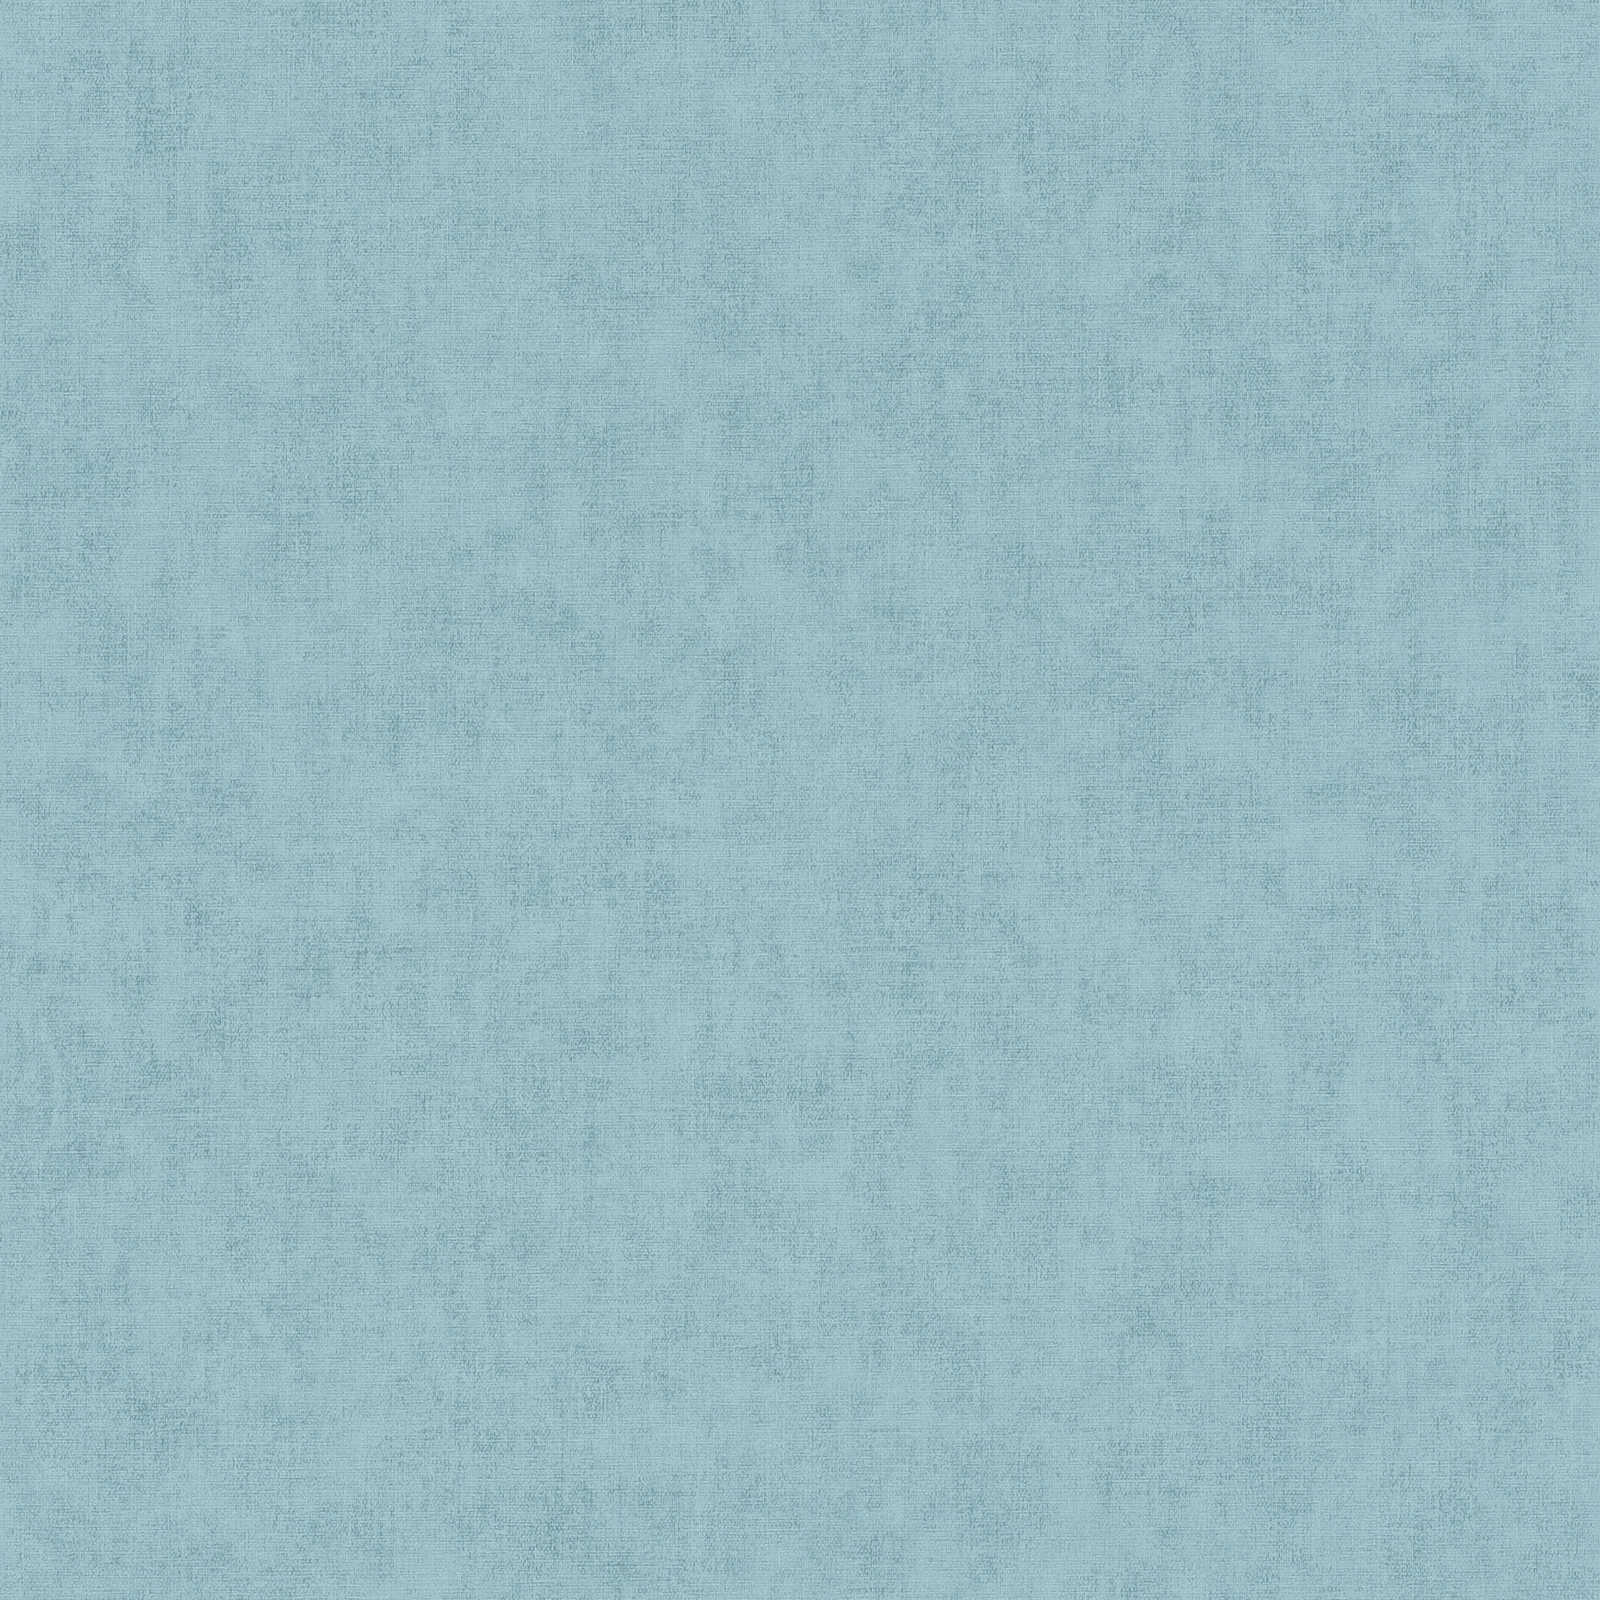 Behang effen, linnenlook & Scandinavische stijl - blauw
